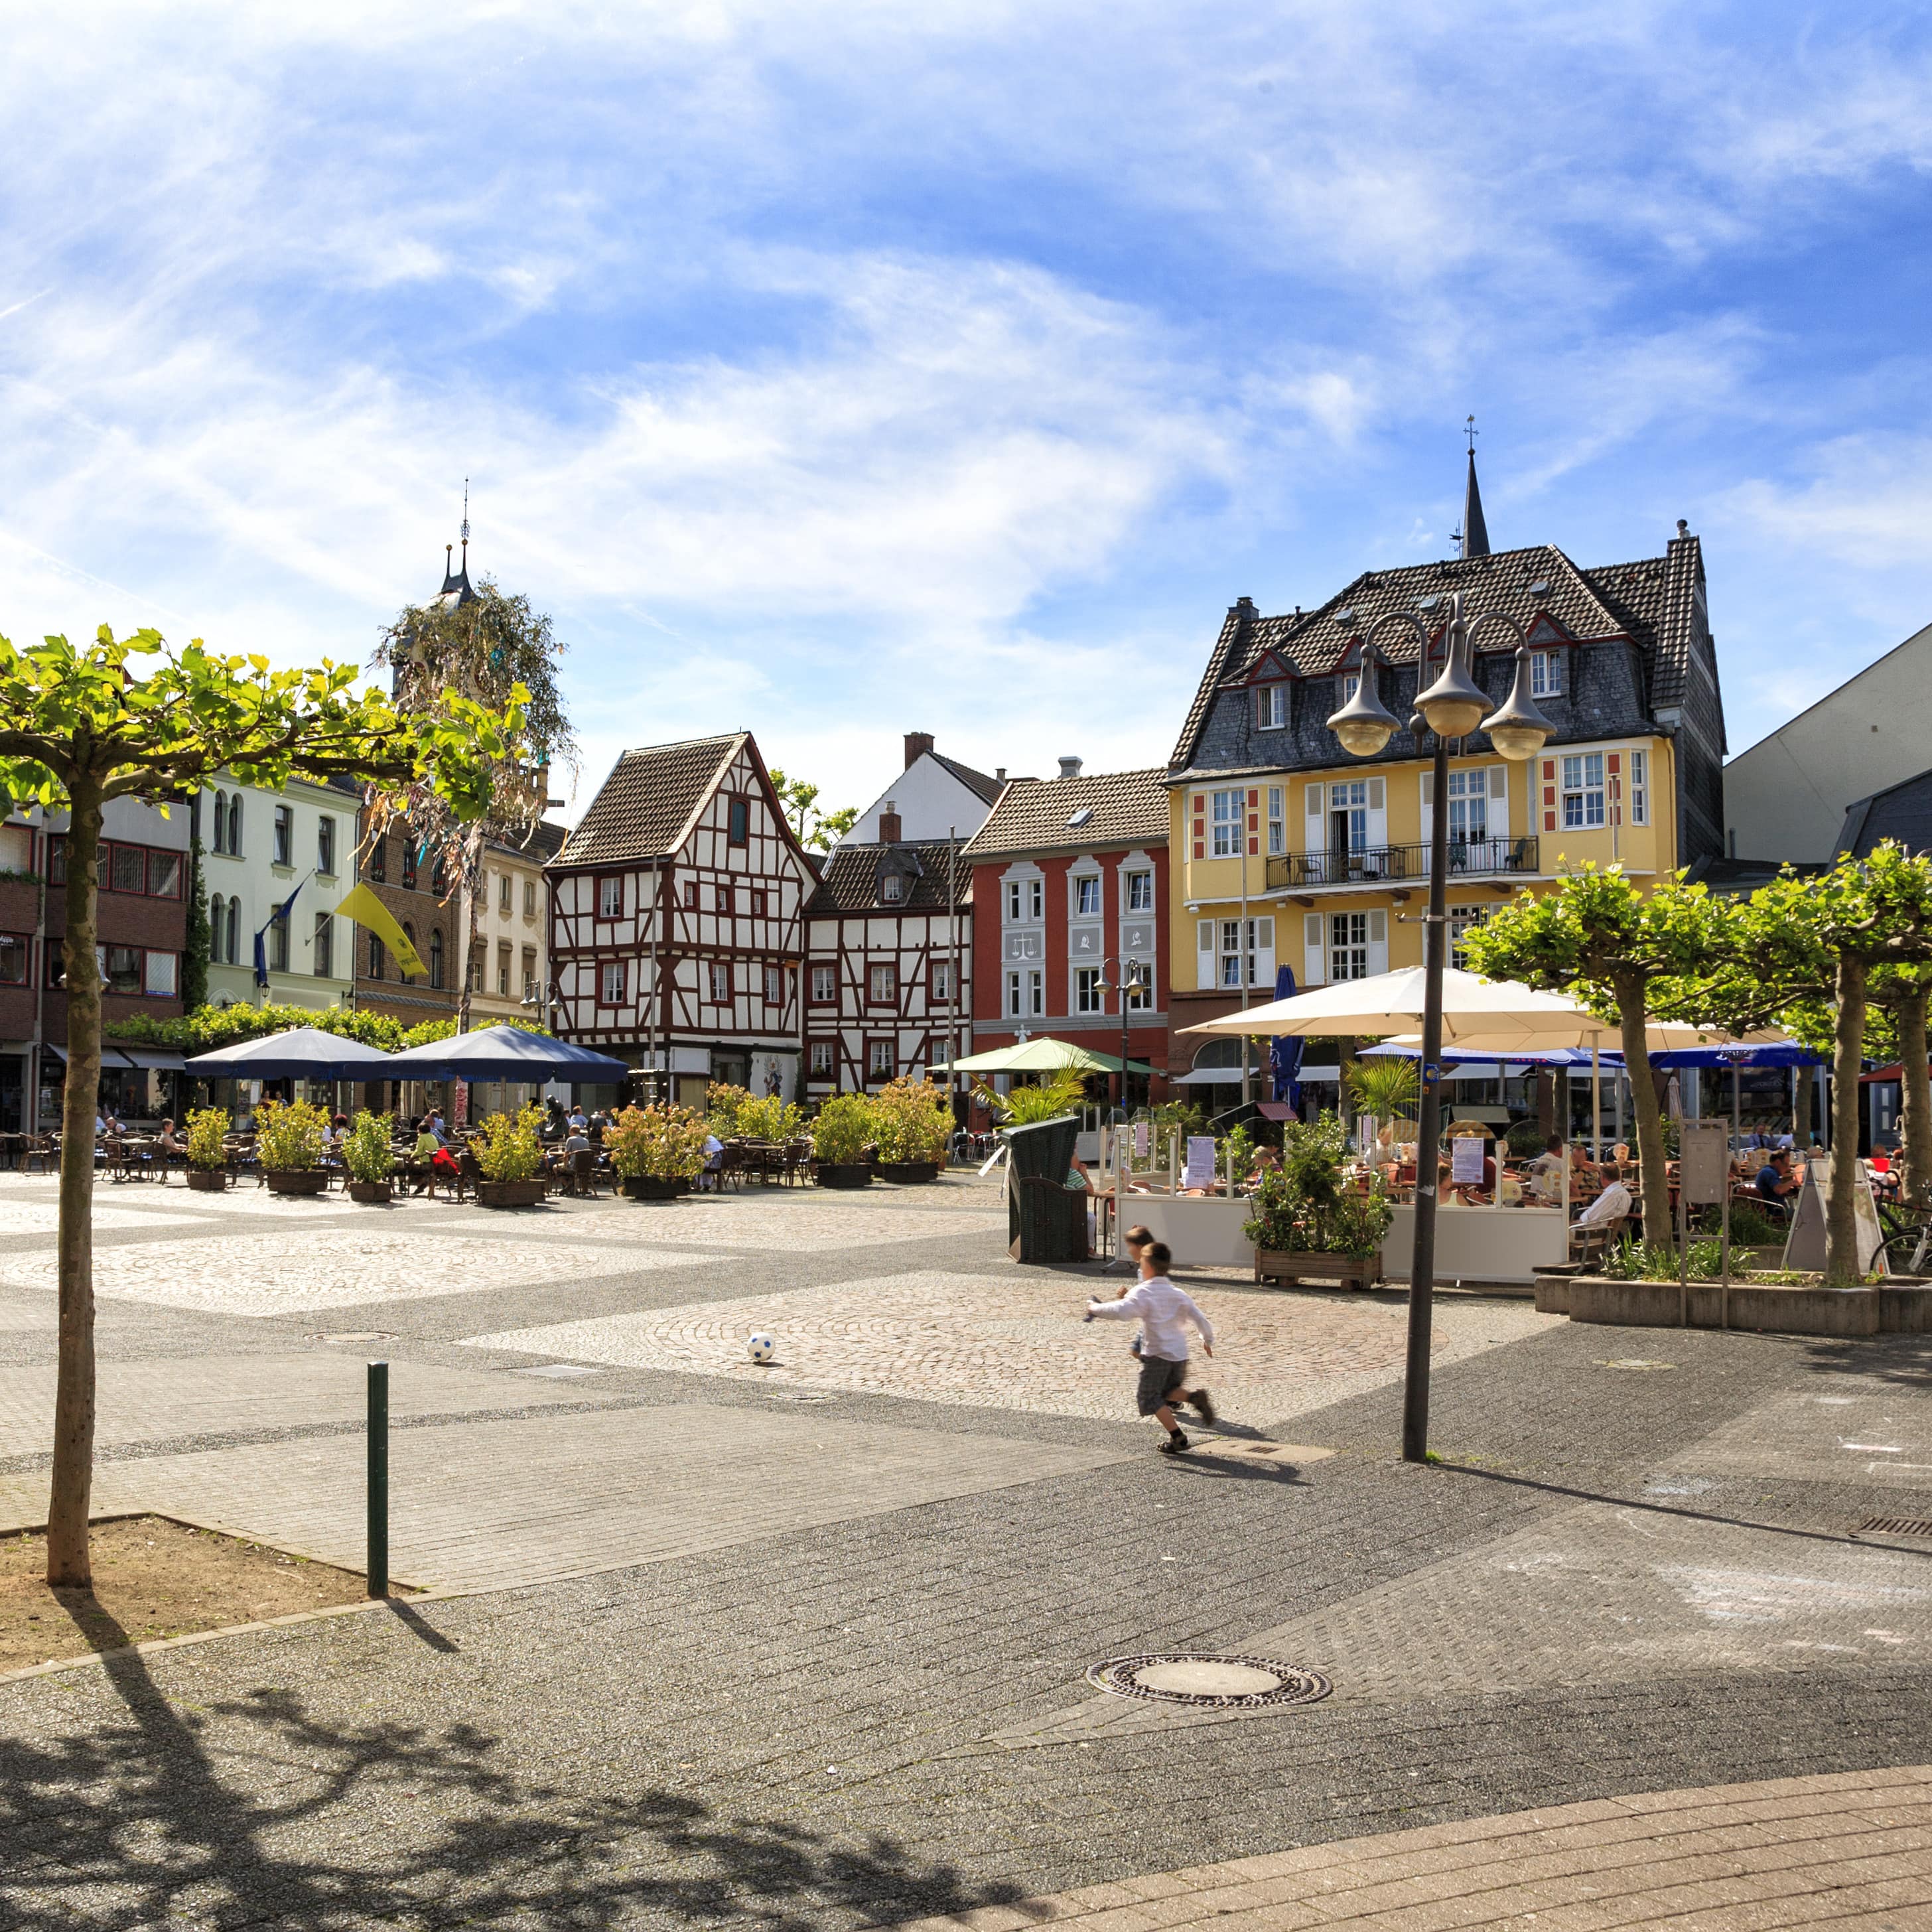 Ein Dorfplatz in einem Ort in der Eifel, ein Junge rennt über den Platz.